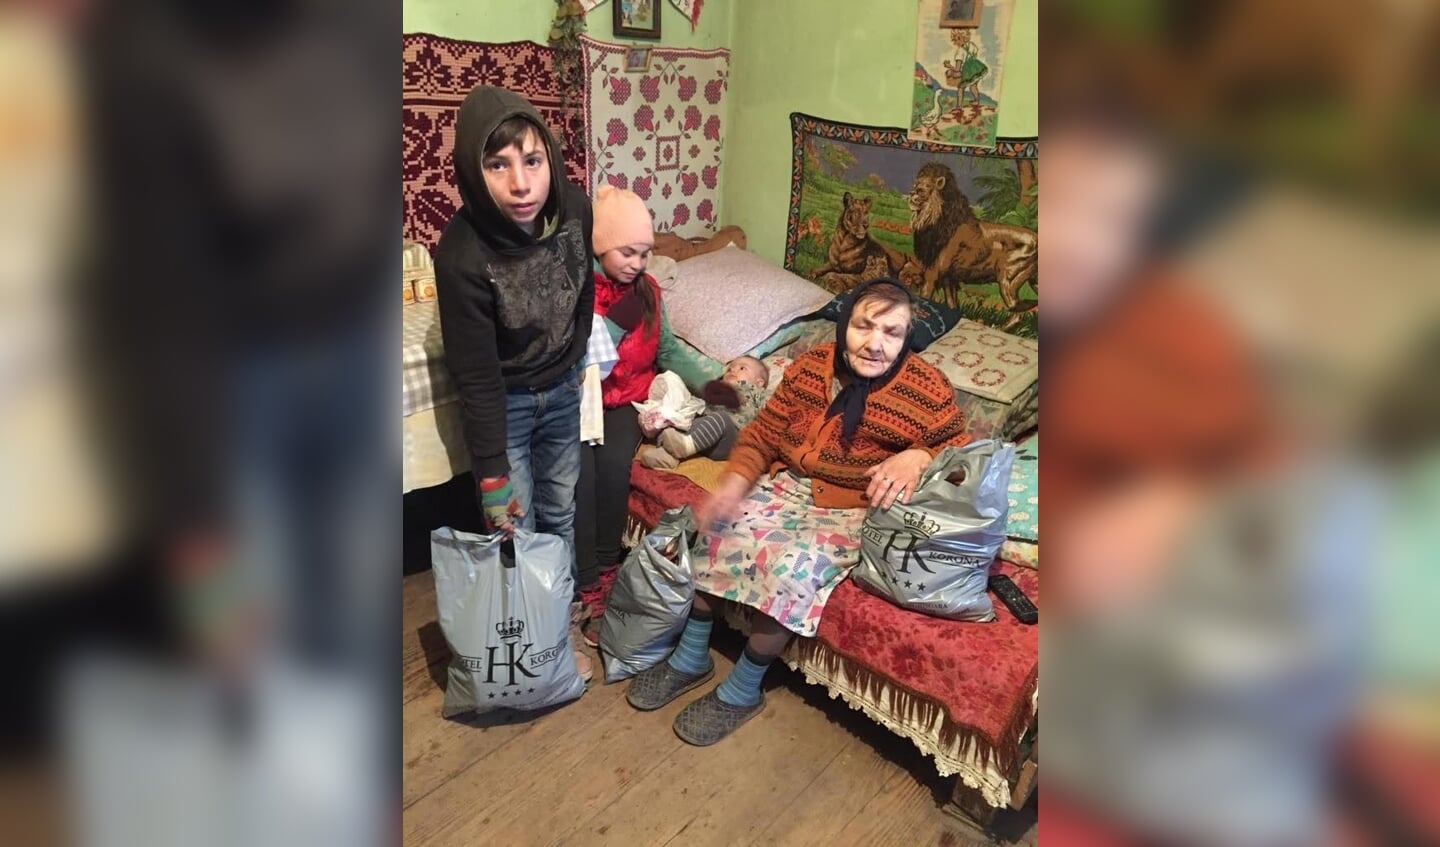 De armoede in delen van Roemenië is schrijnend. 